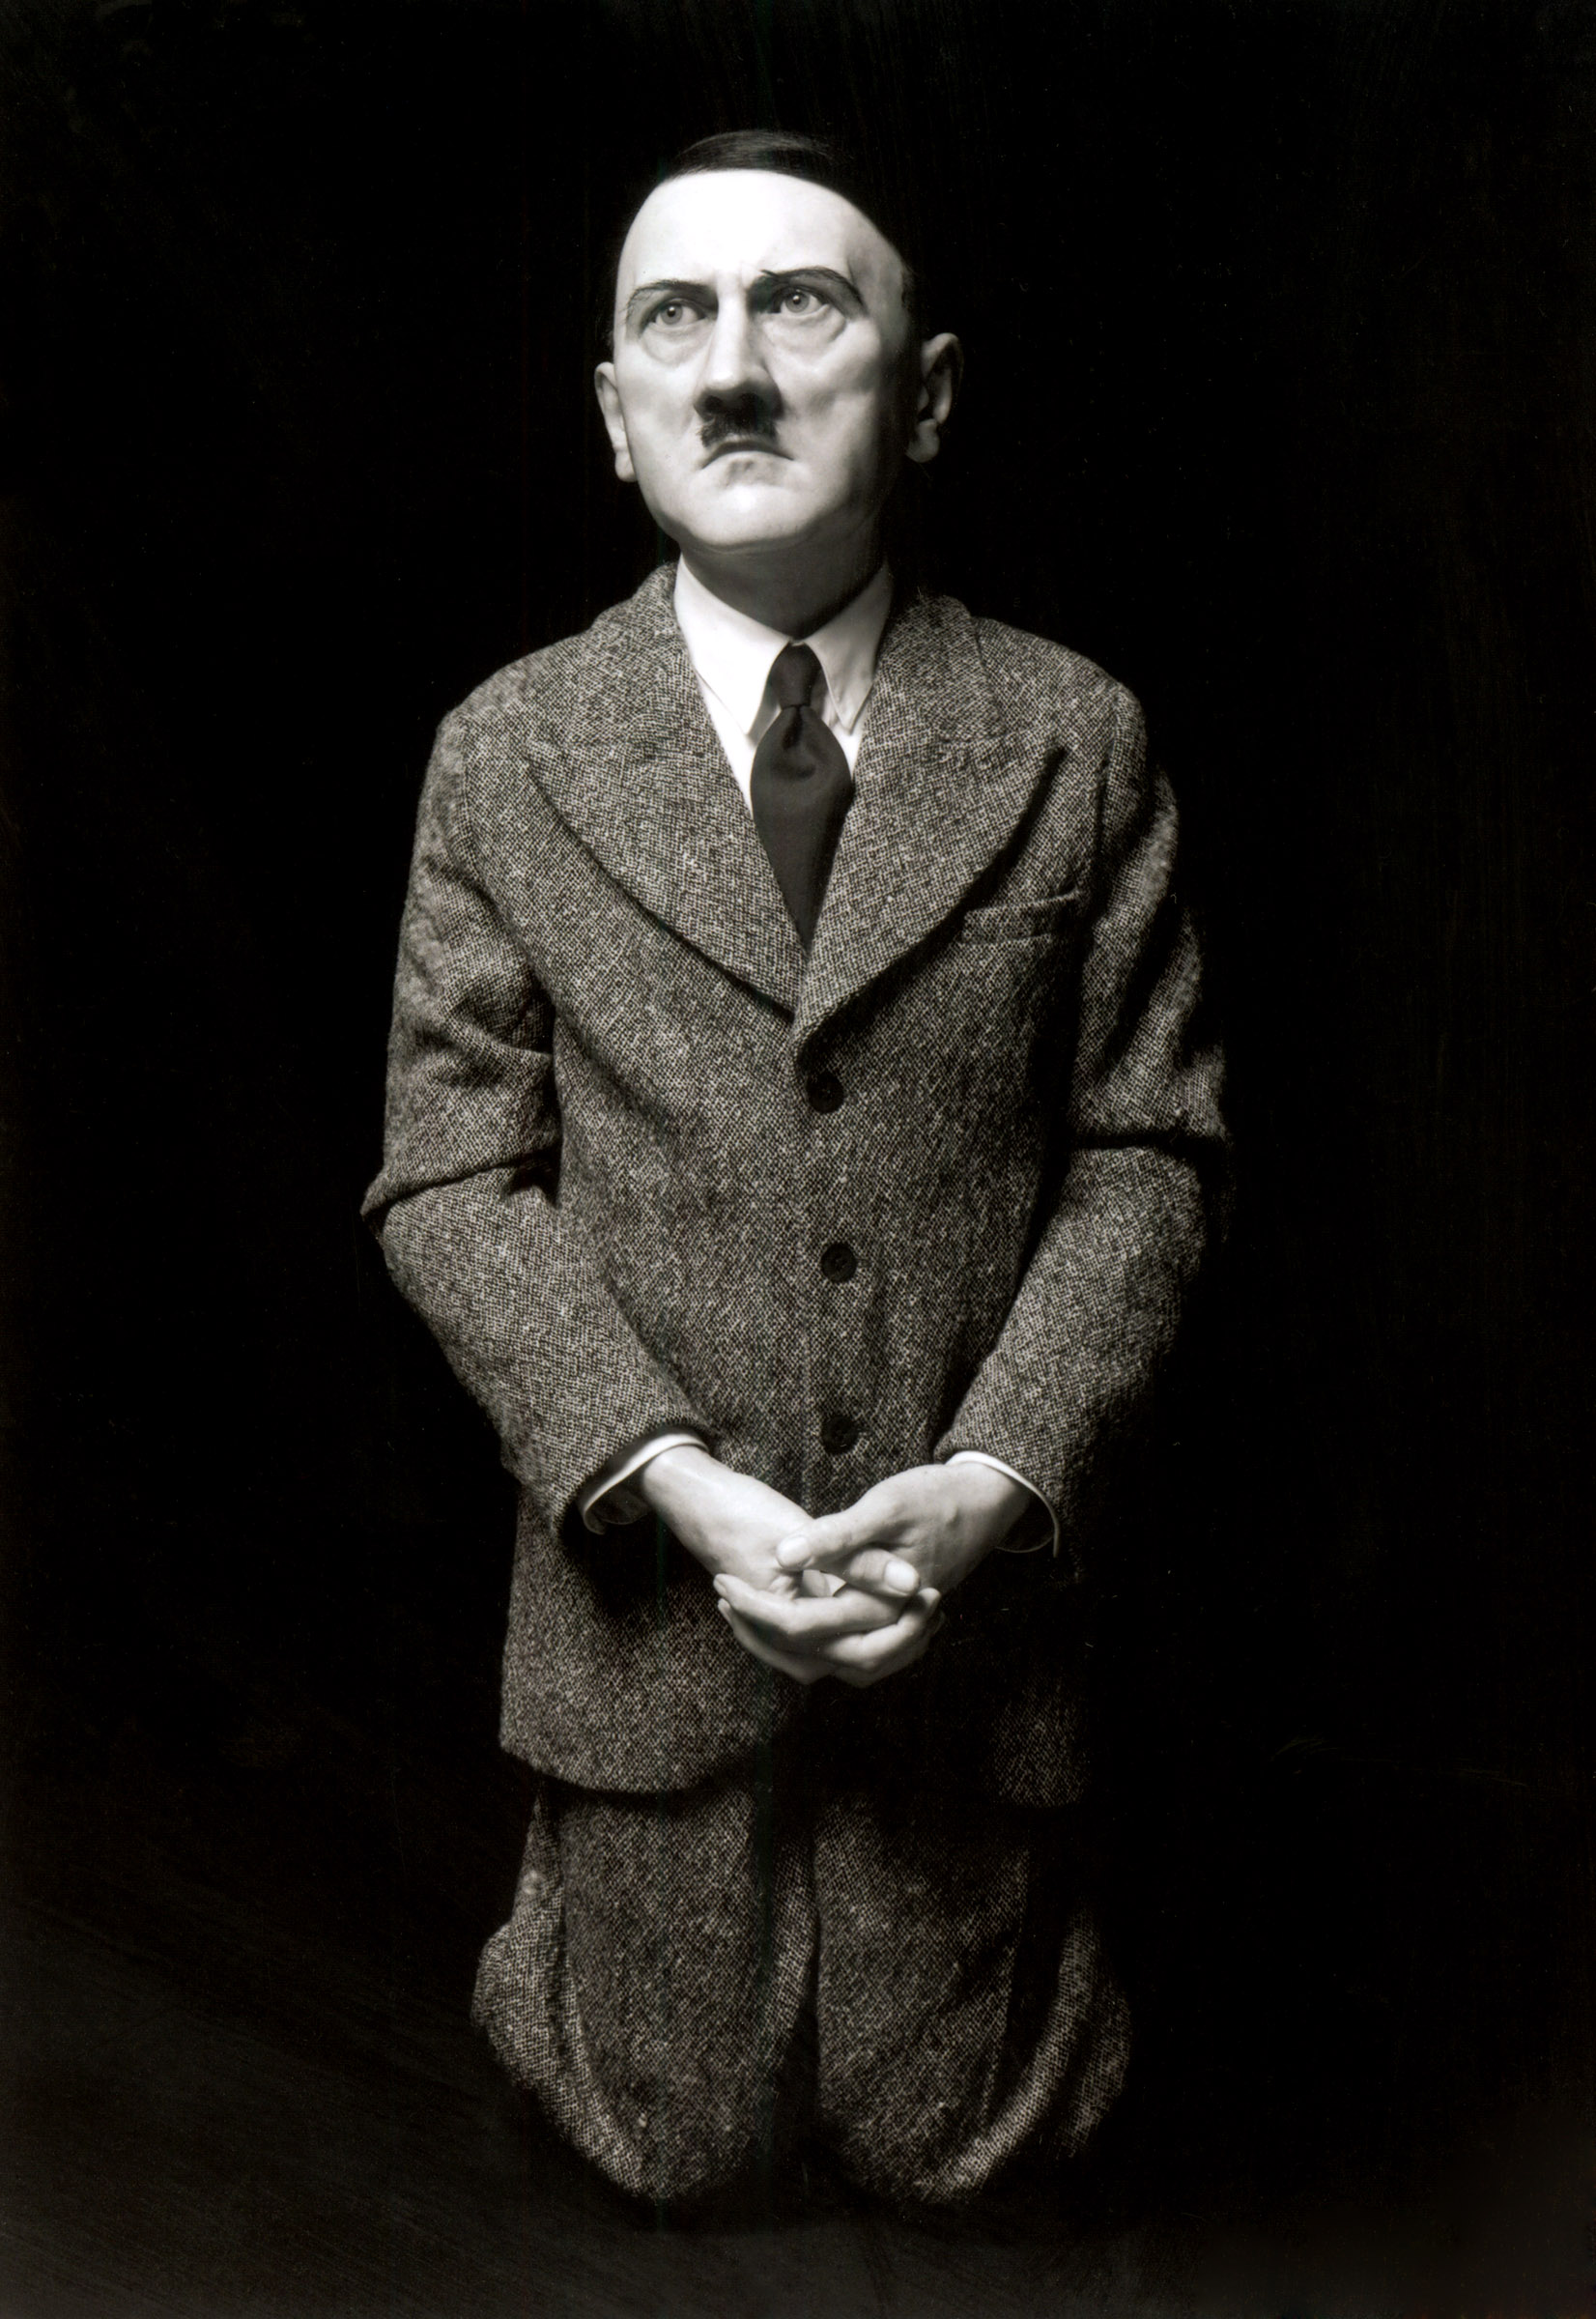 Satirical depiction of Hitler